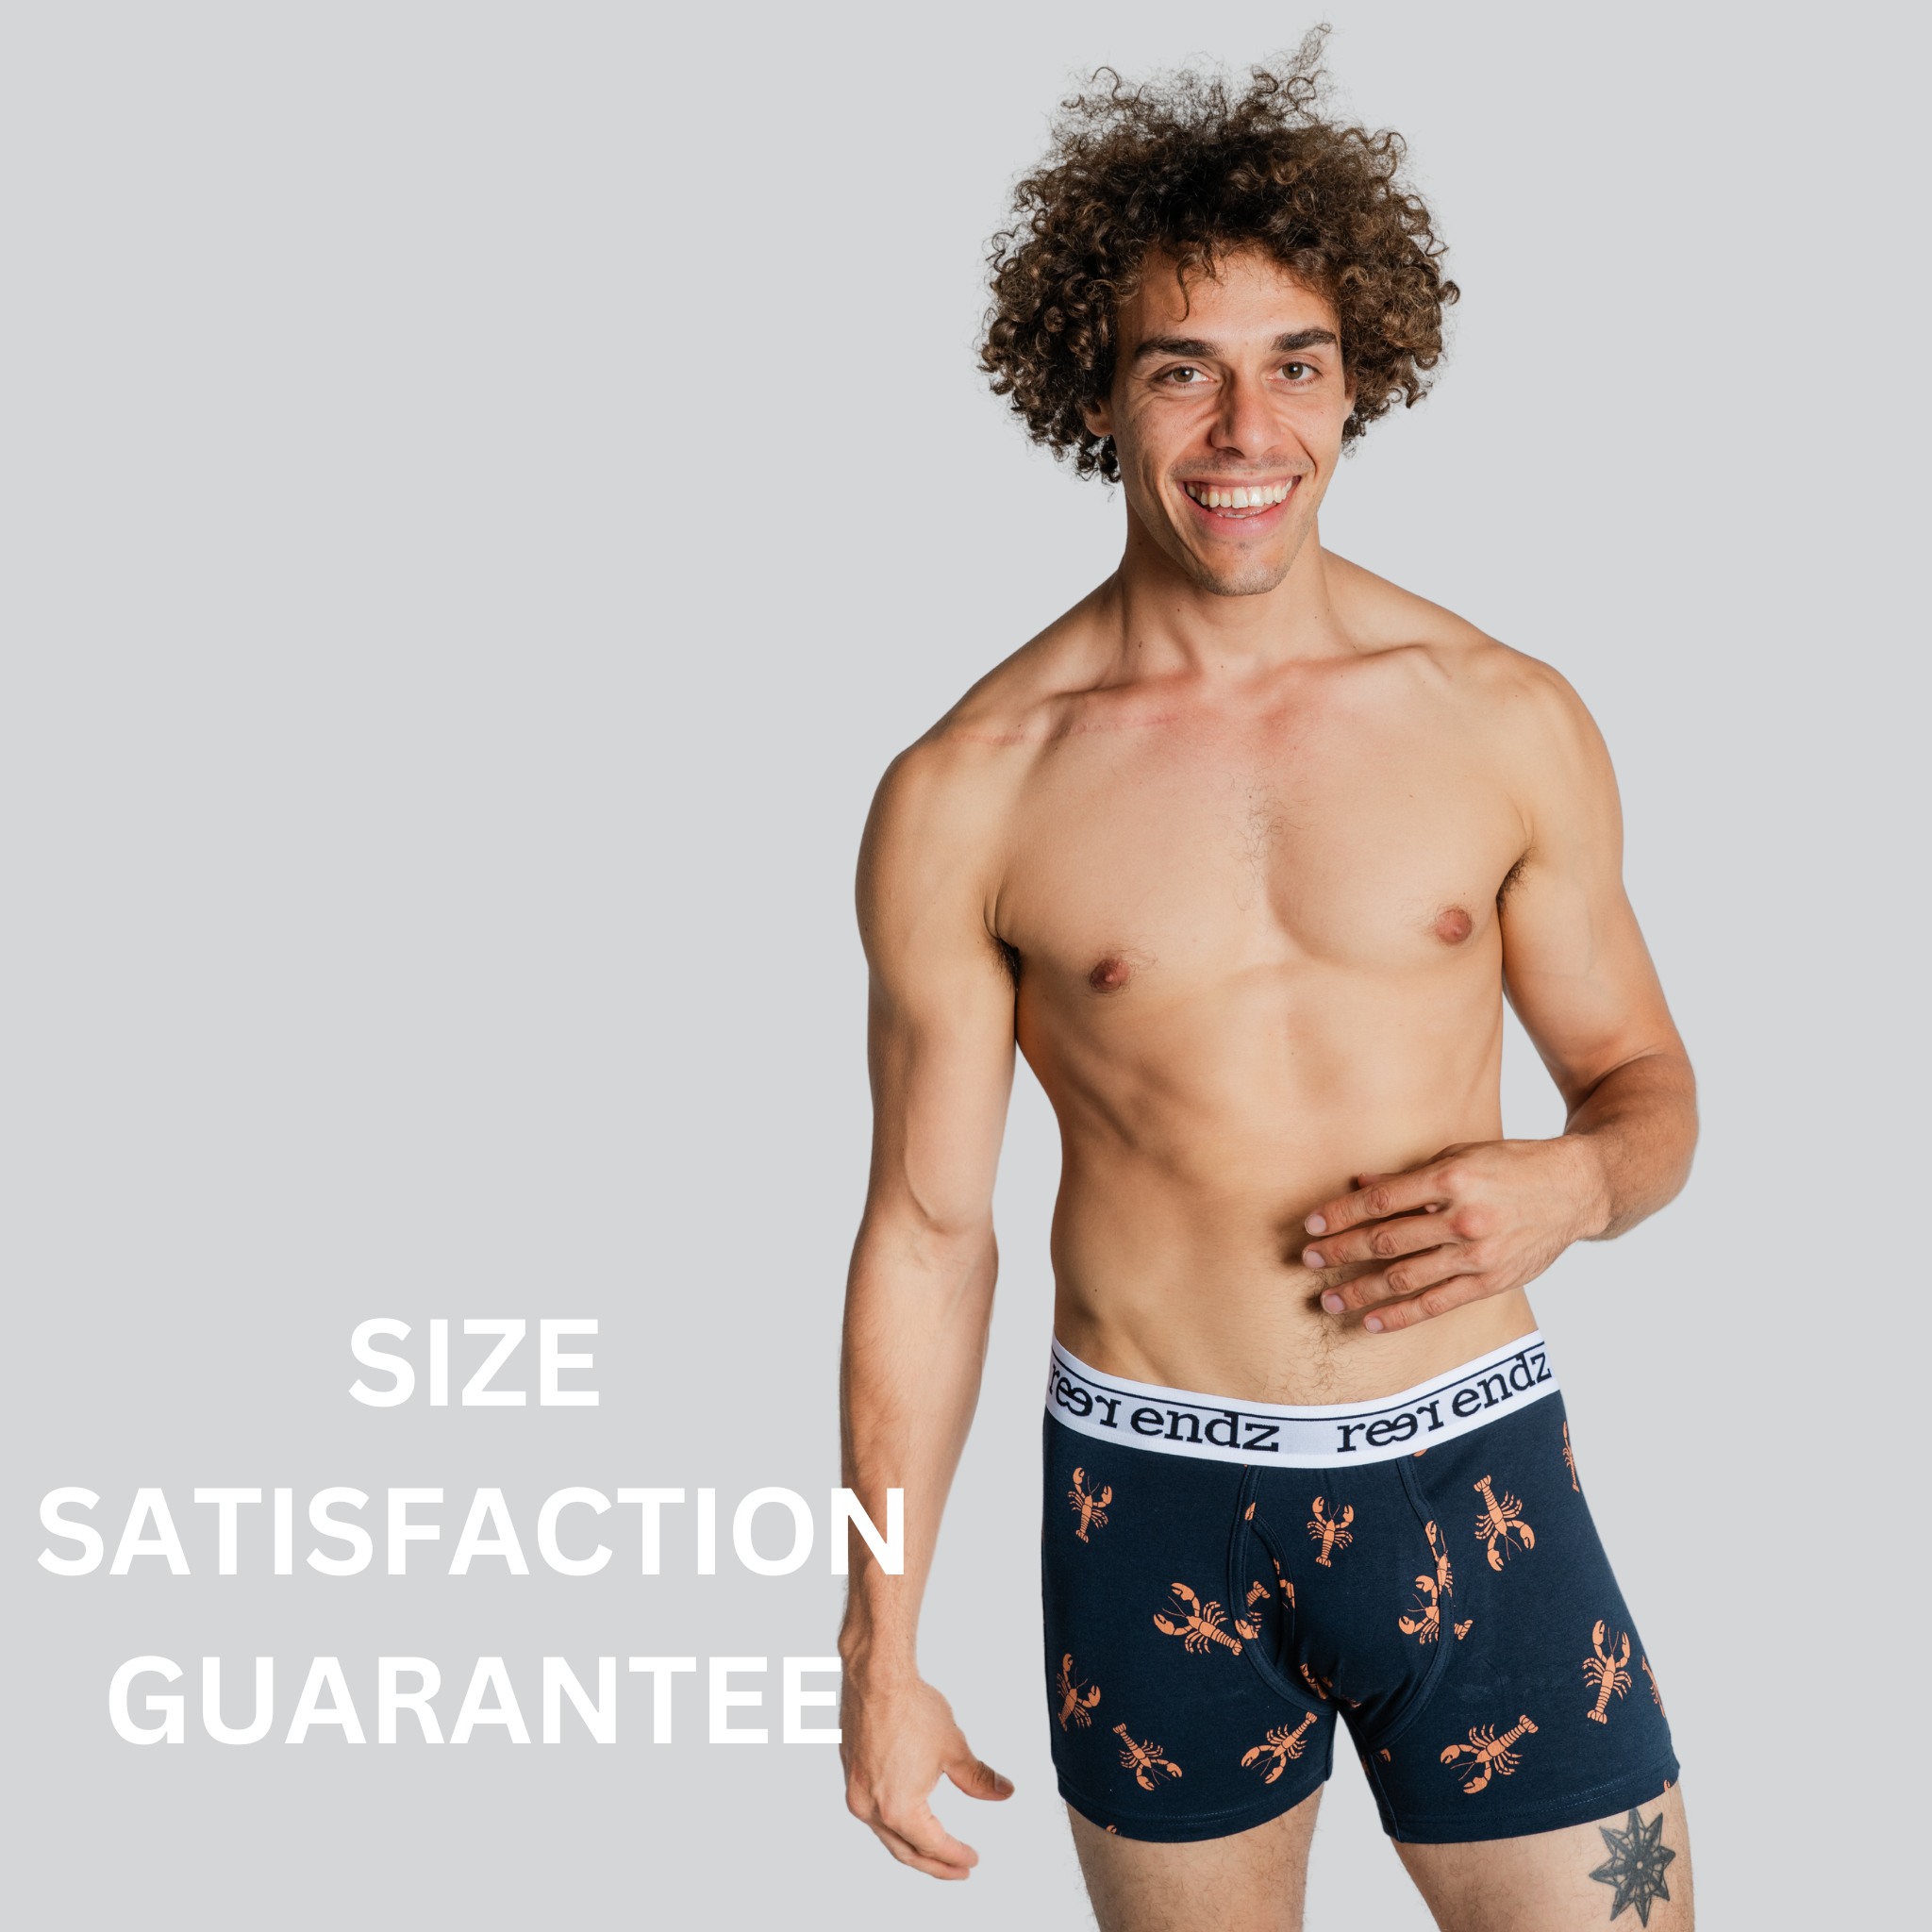 Size satisfaction with Reer Endz men's underwear